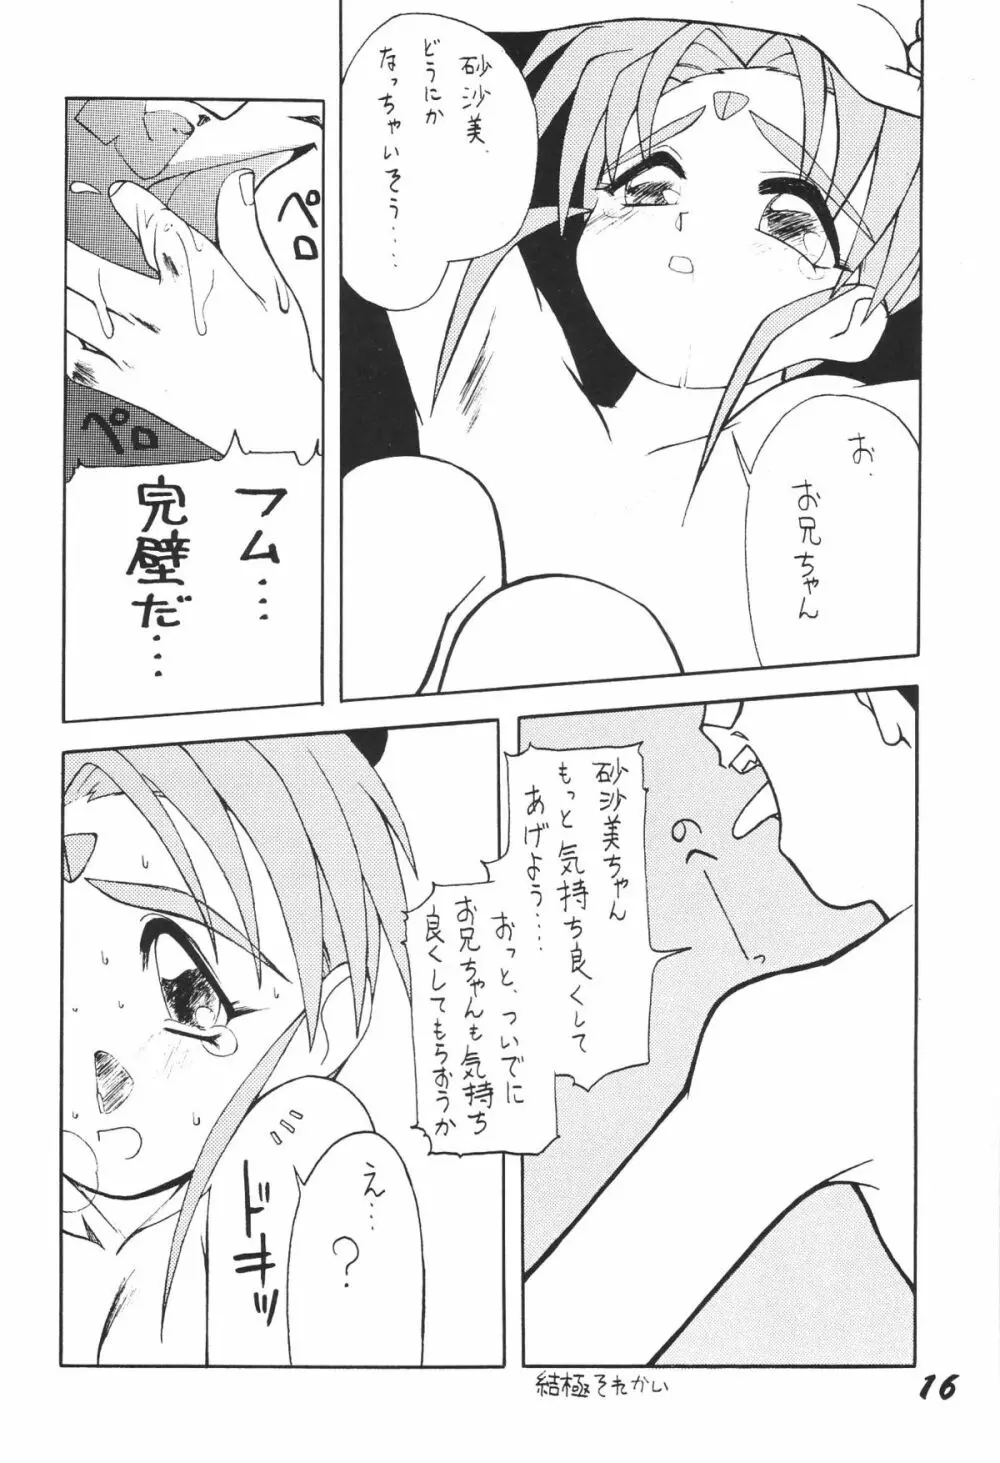 無用野郎Aチーム3.5 白花繚乱 15ページ